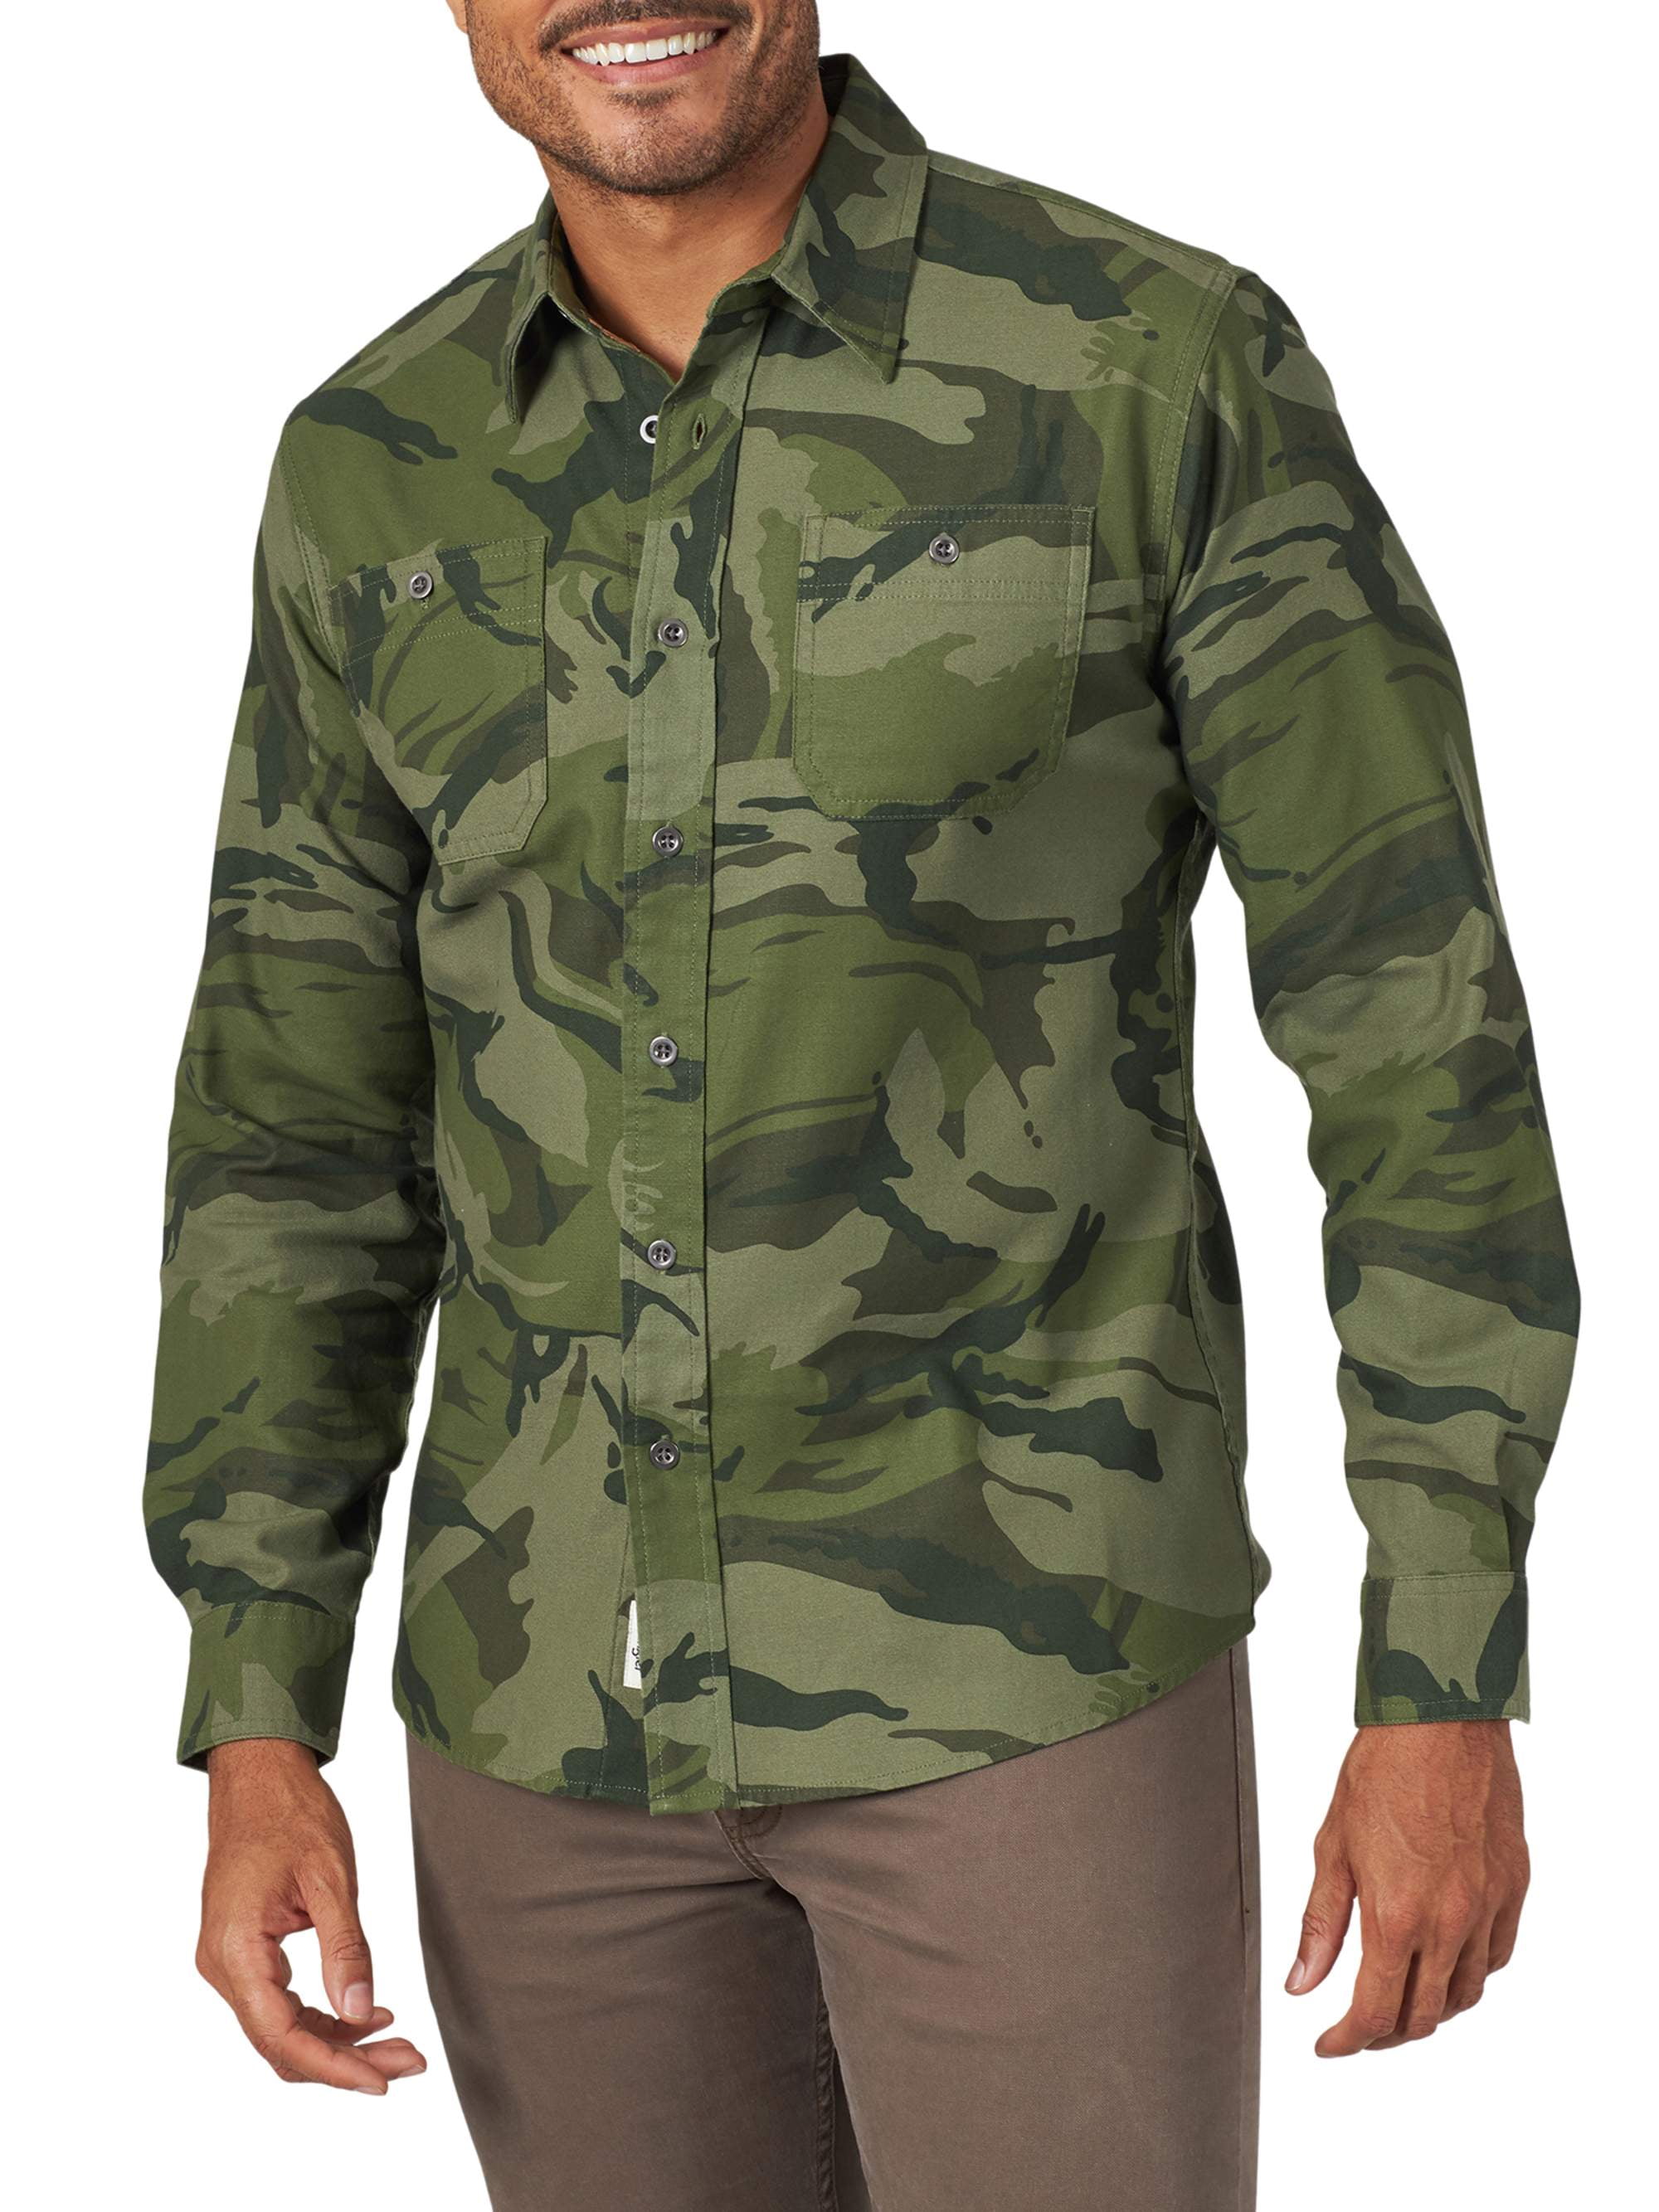 Wrangler Men's Premium Slim Fit Camo Shirt - Walmart.com